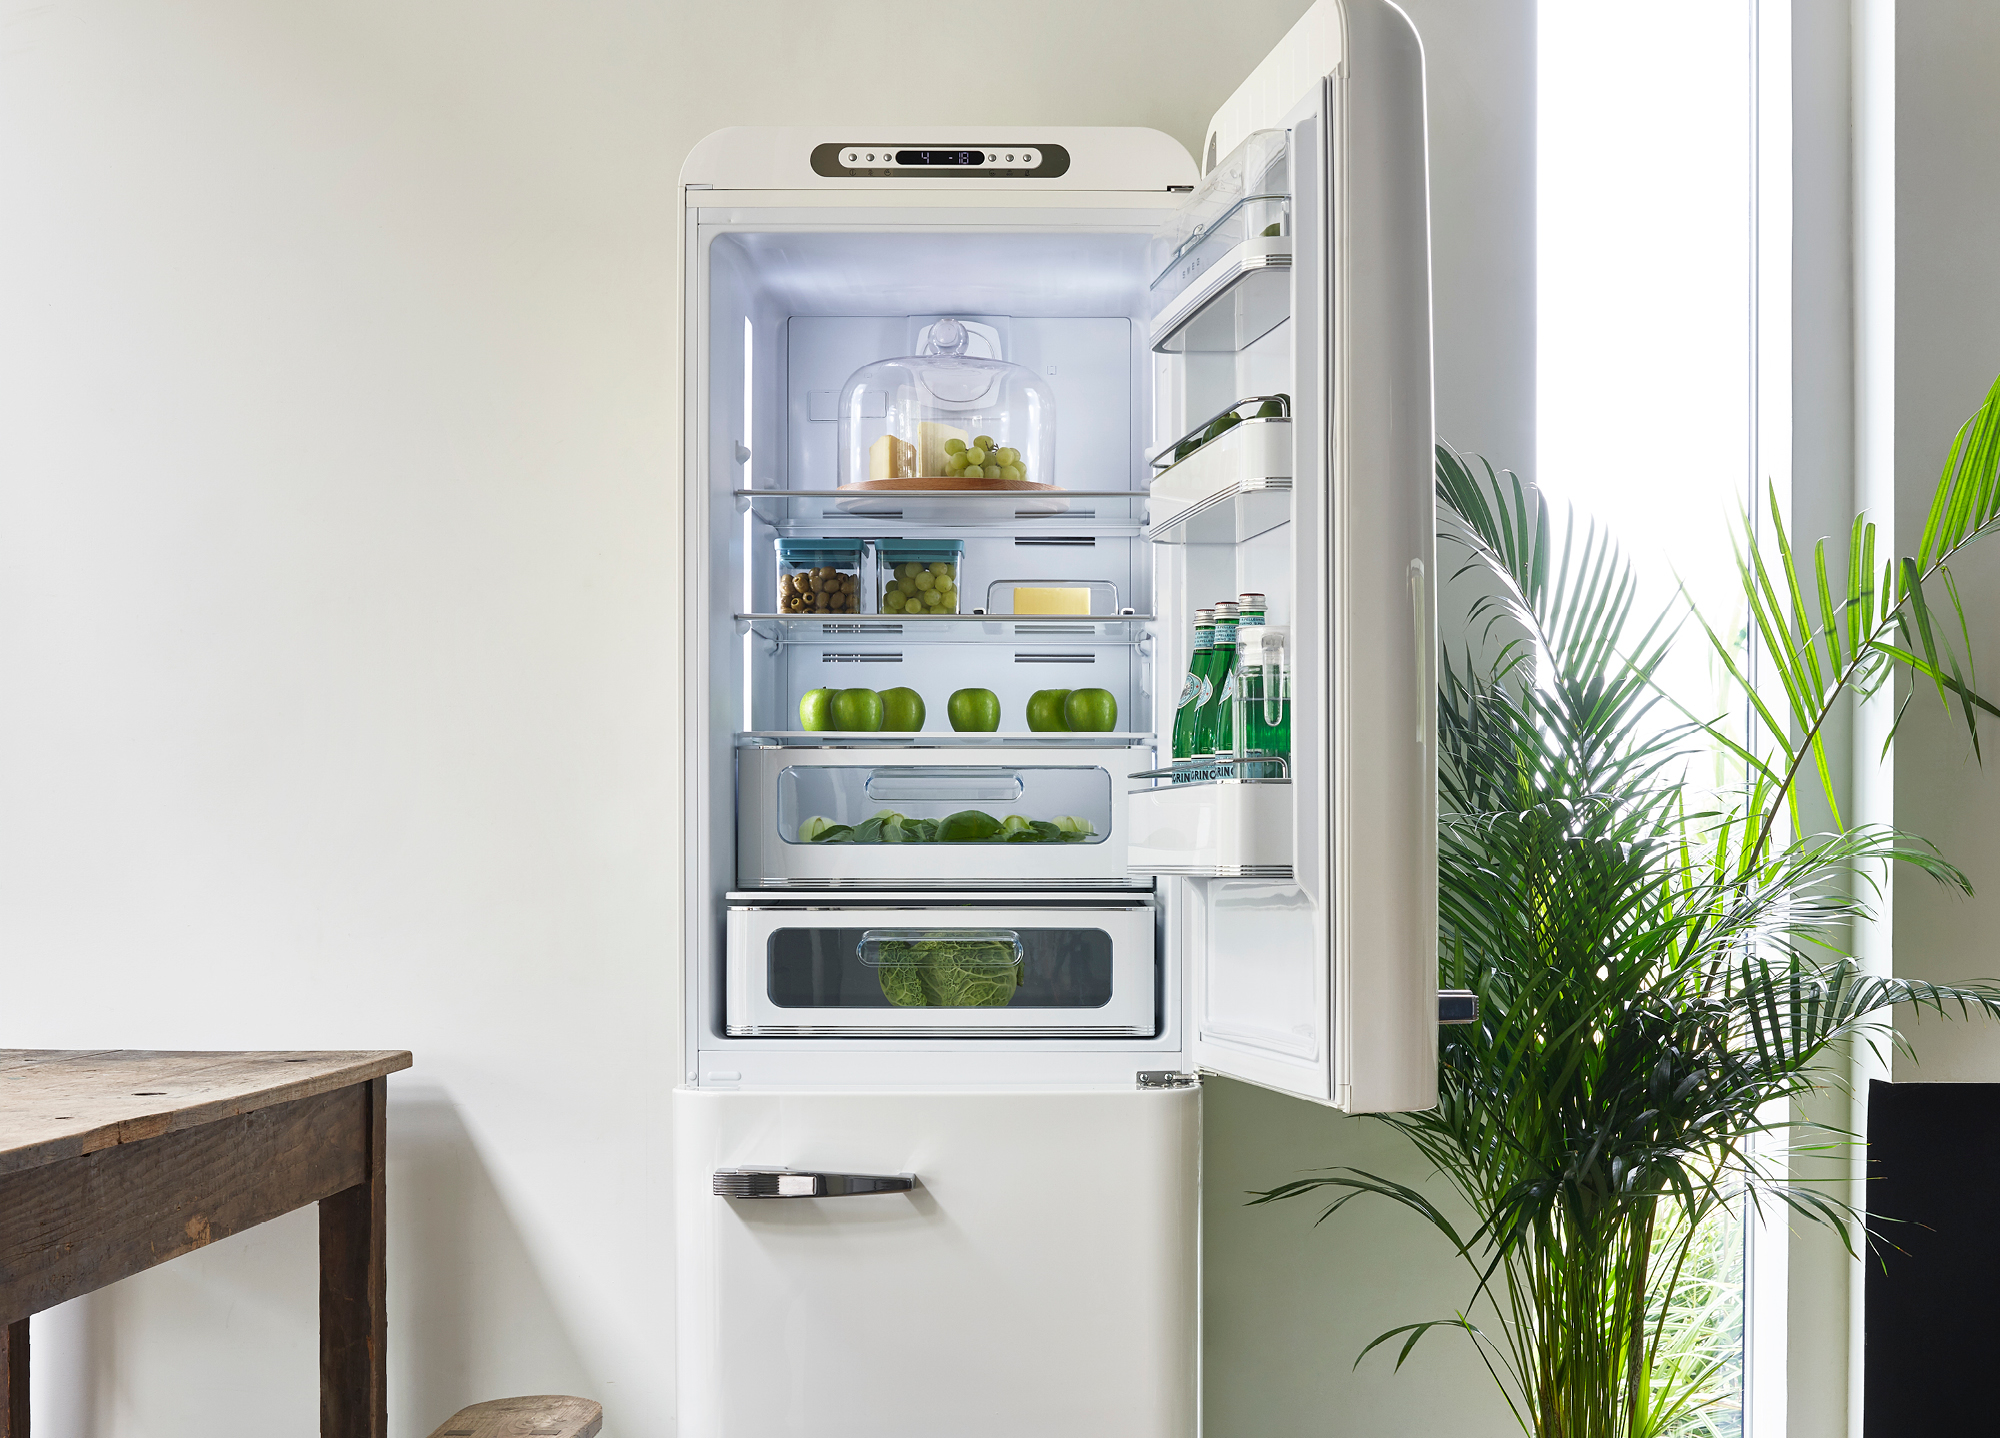 Réfrigérateurs : Classe Énergétique & Étiquette Énergie